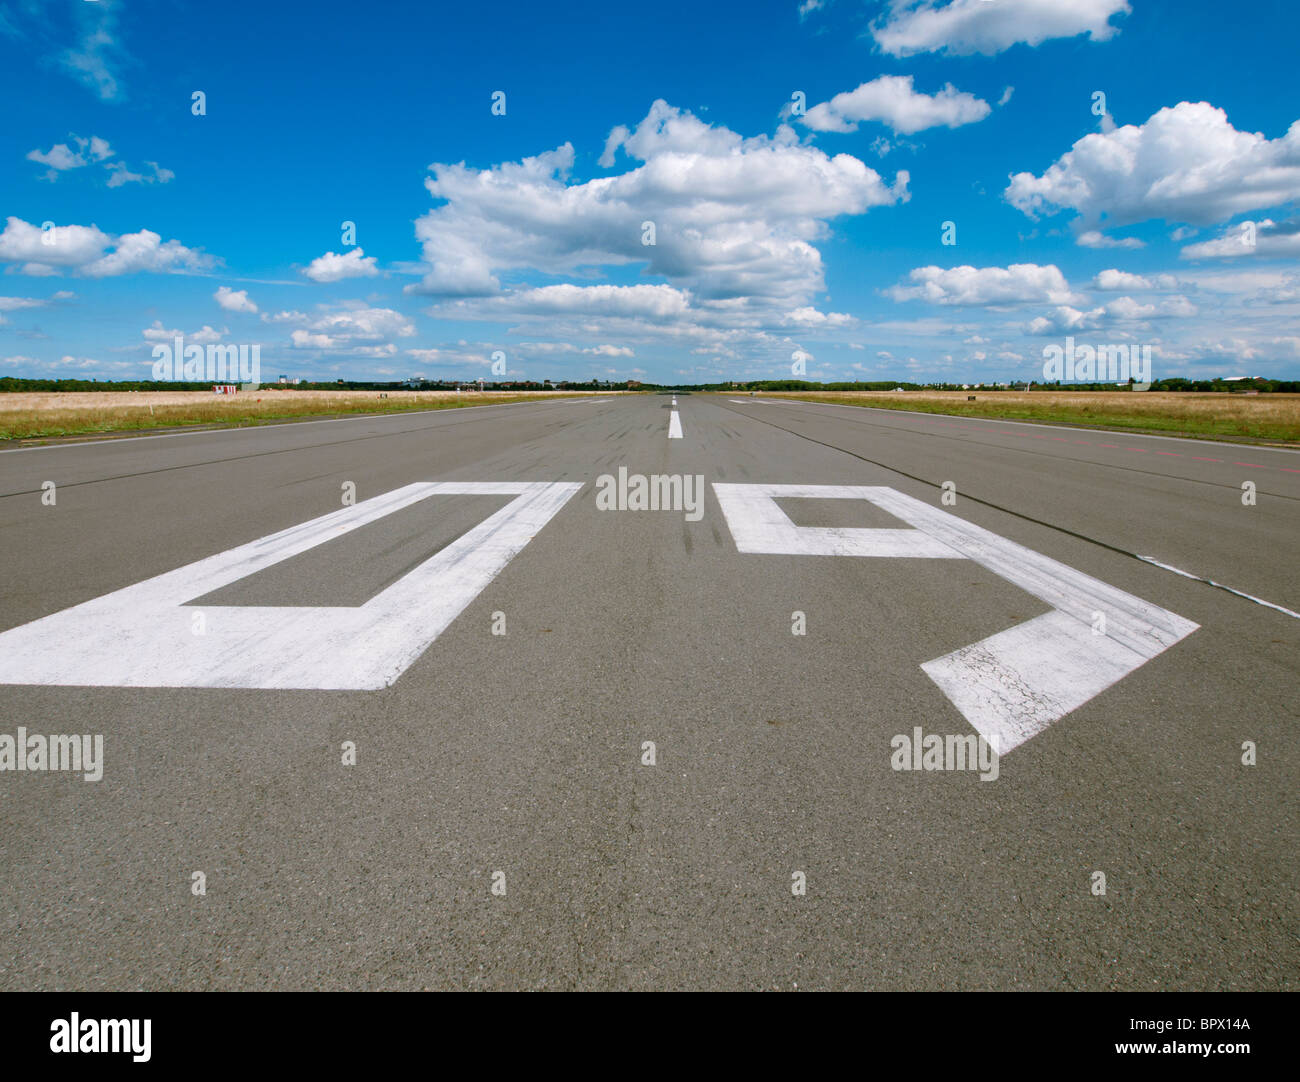 La piste de l'aéroport désaffecté à new city public Tempelhofer Park sur le site de l'ancien aéroport de Tempelhof célèbre à Berlin Allemagne Banque D'Images